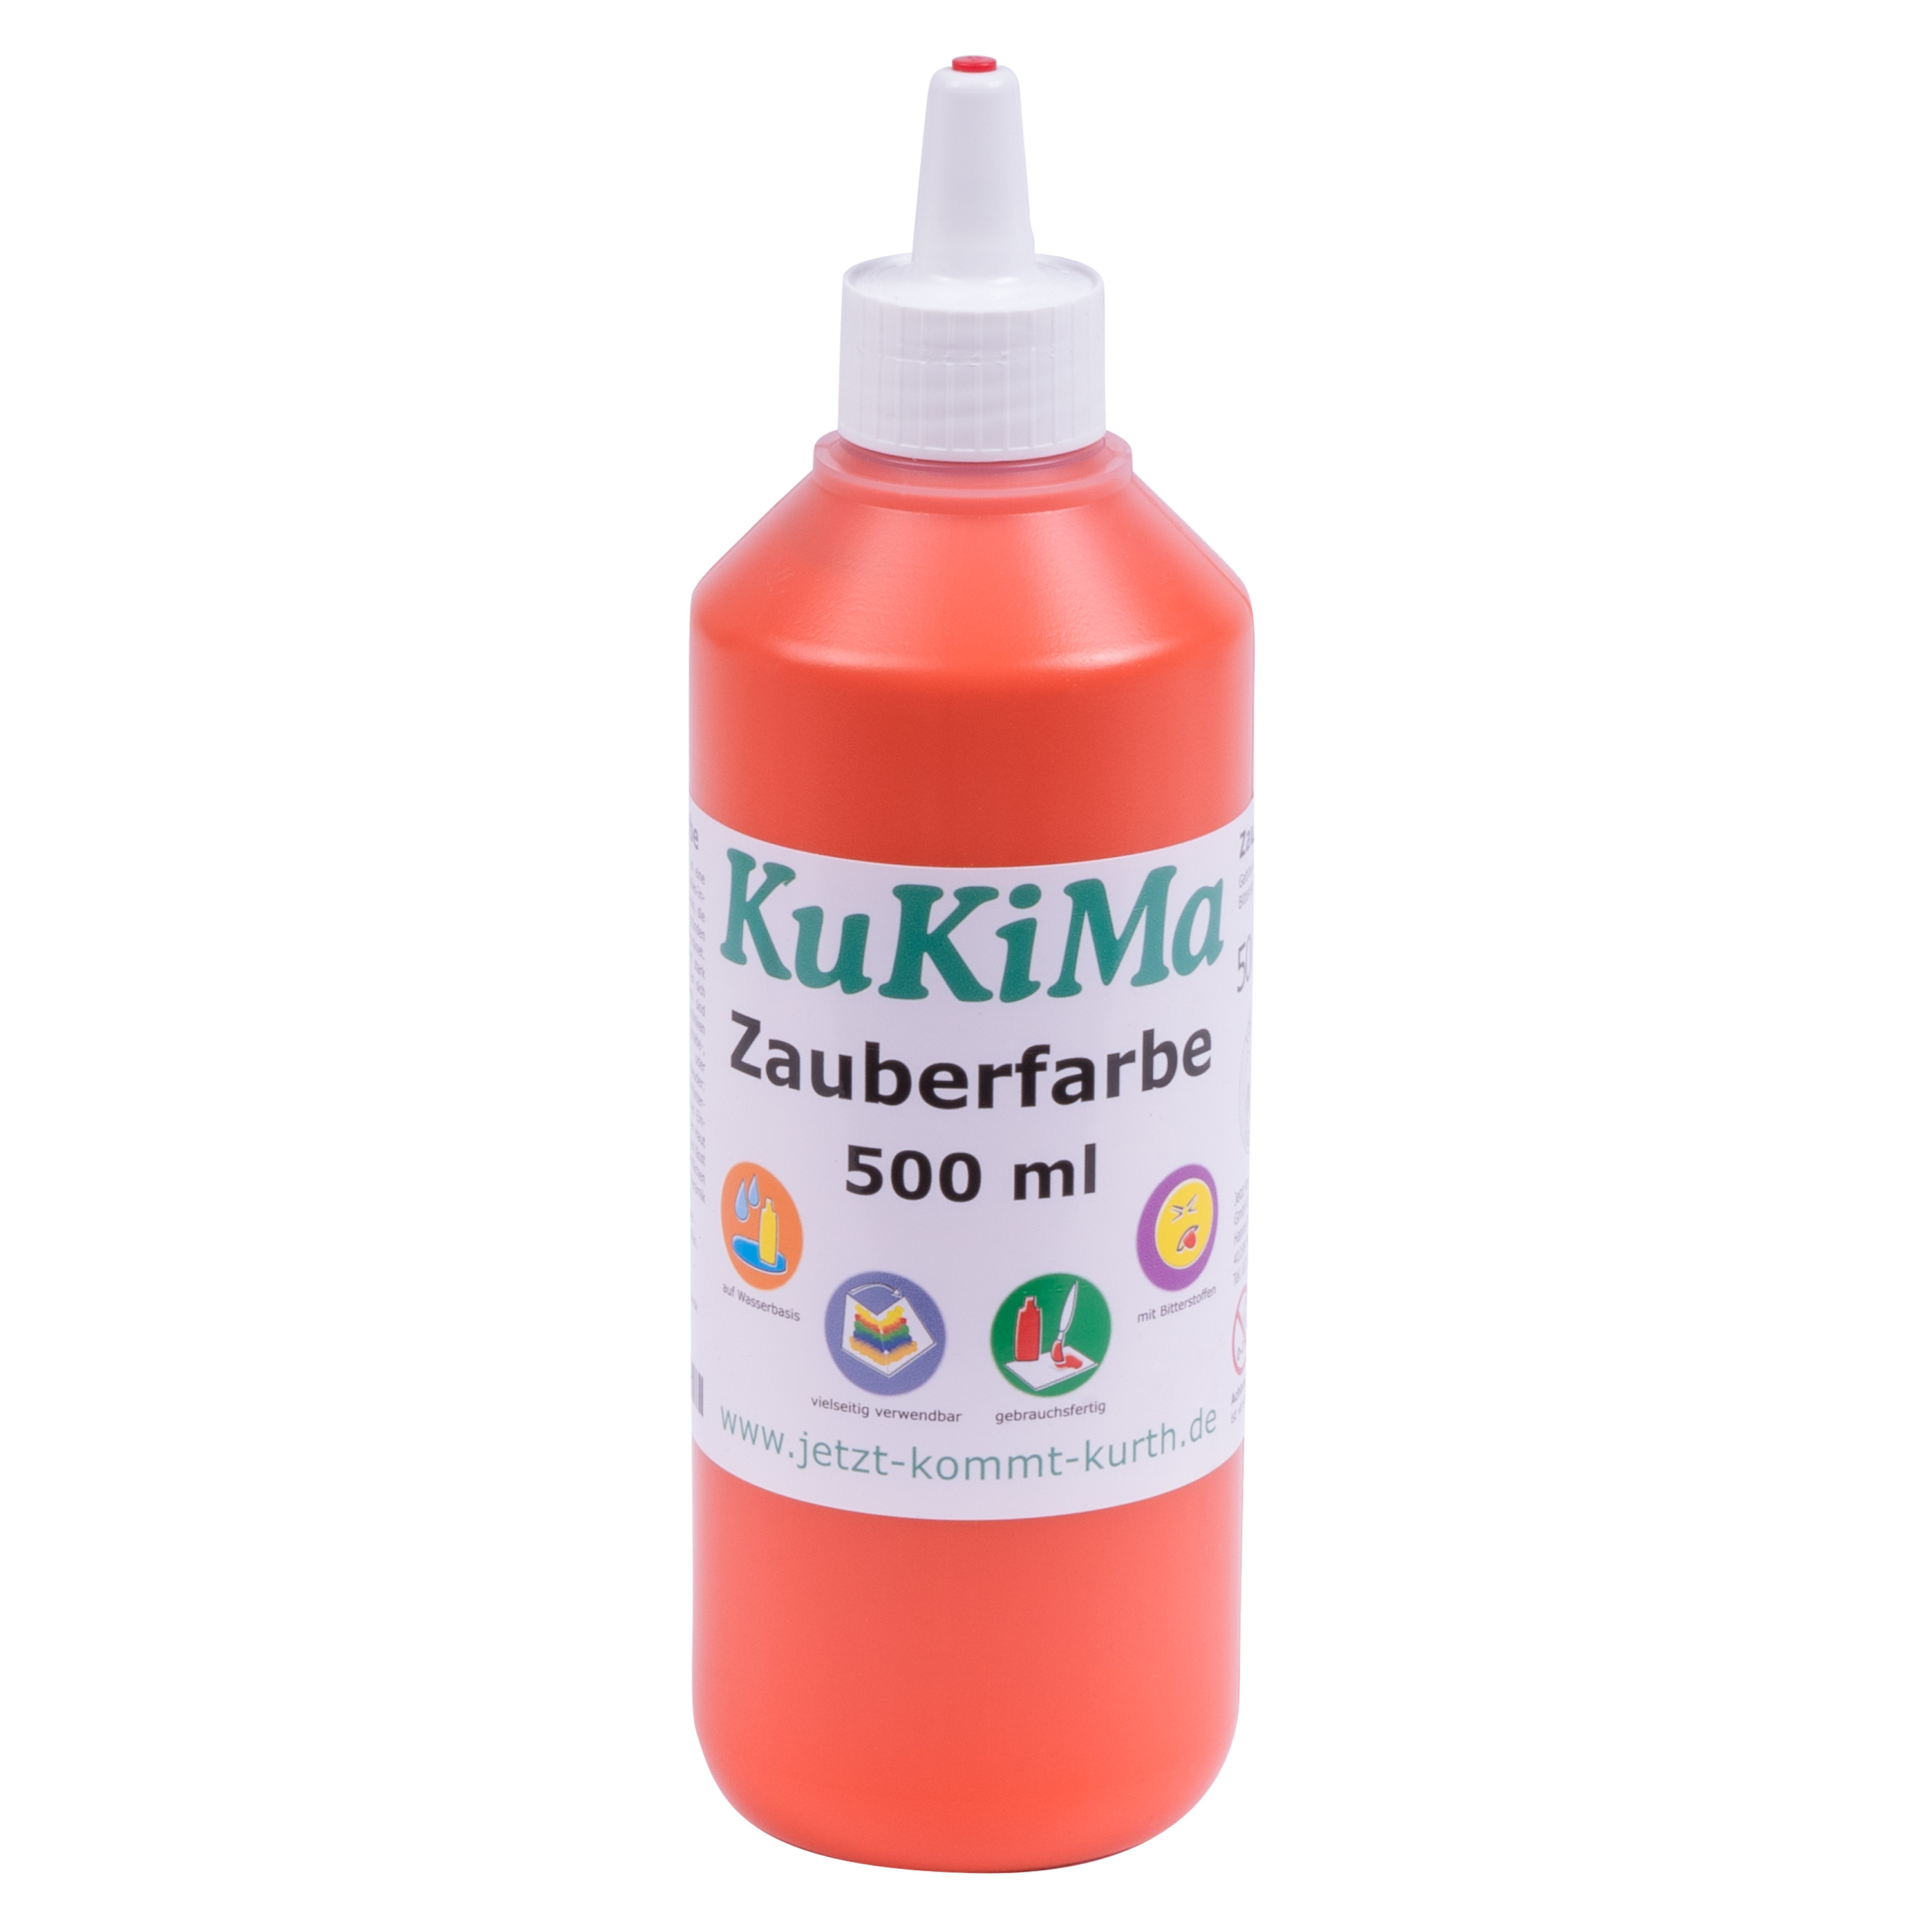 KuKiMa Zauberfarbe 'orange', 500 ml